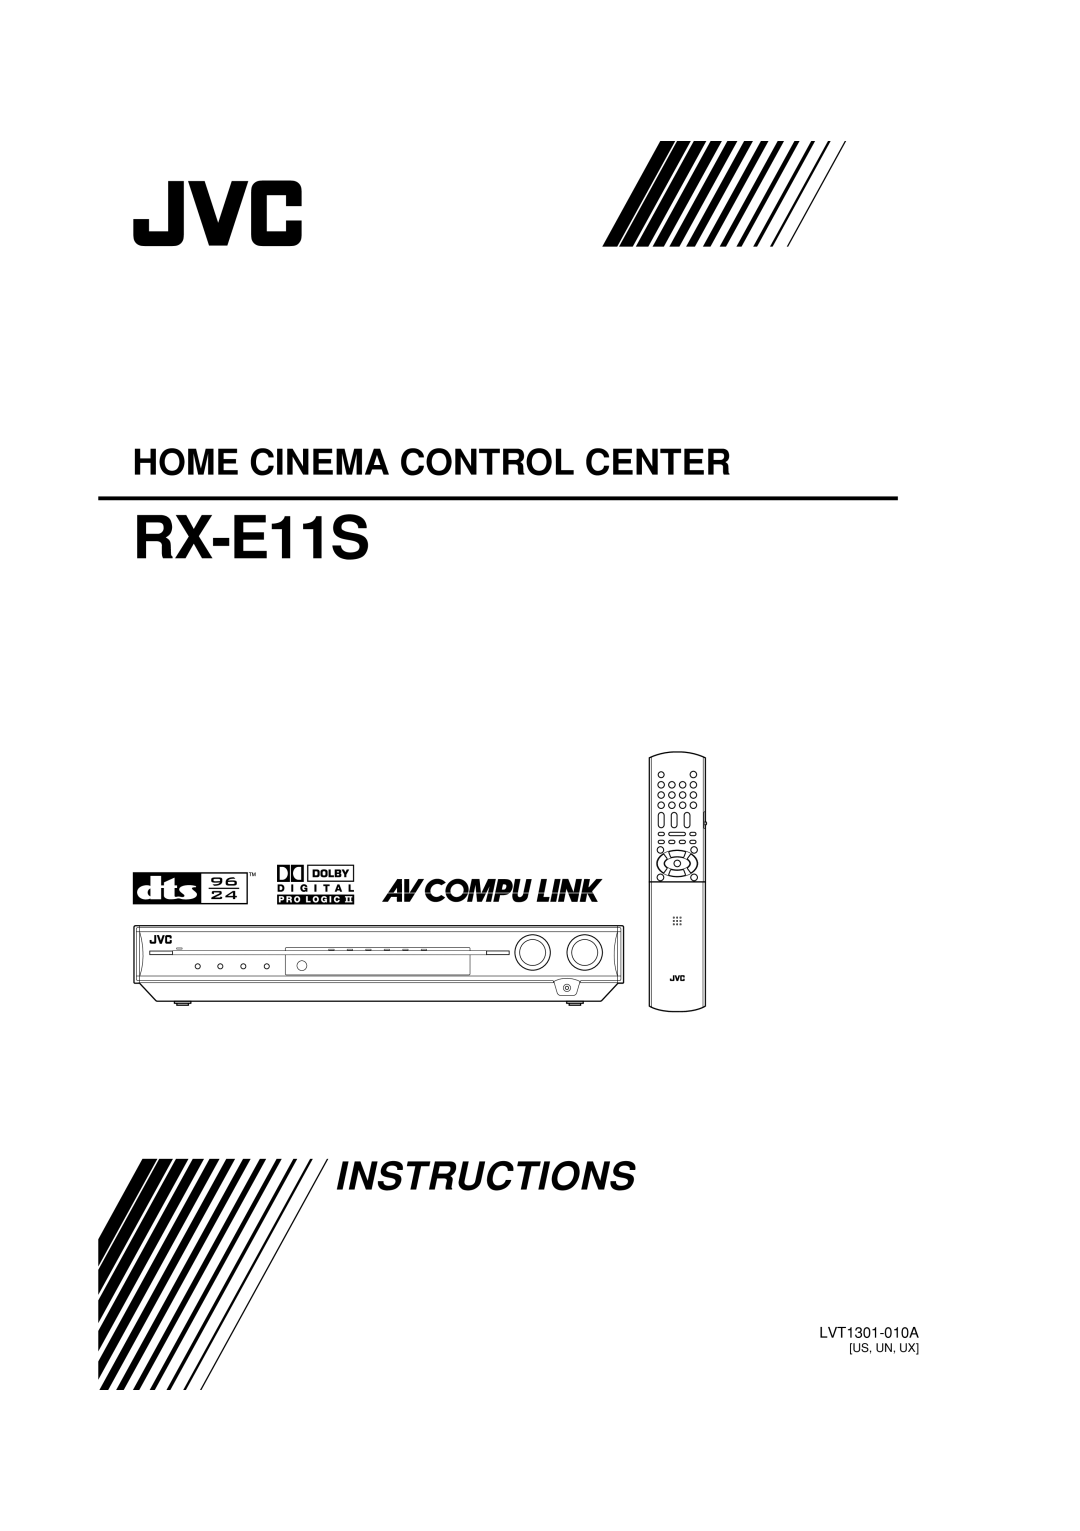 JVC RX-E11S manual Instructions, Home Cinema Control Center 